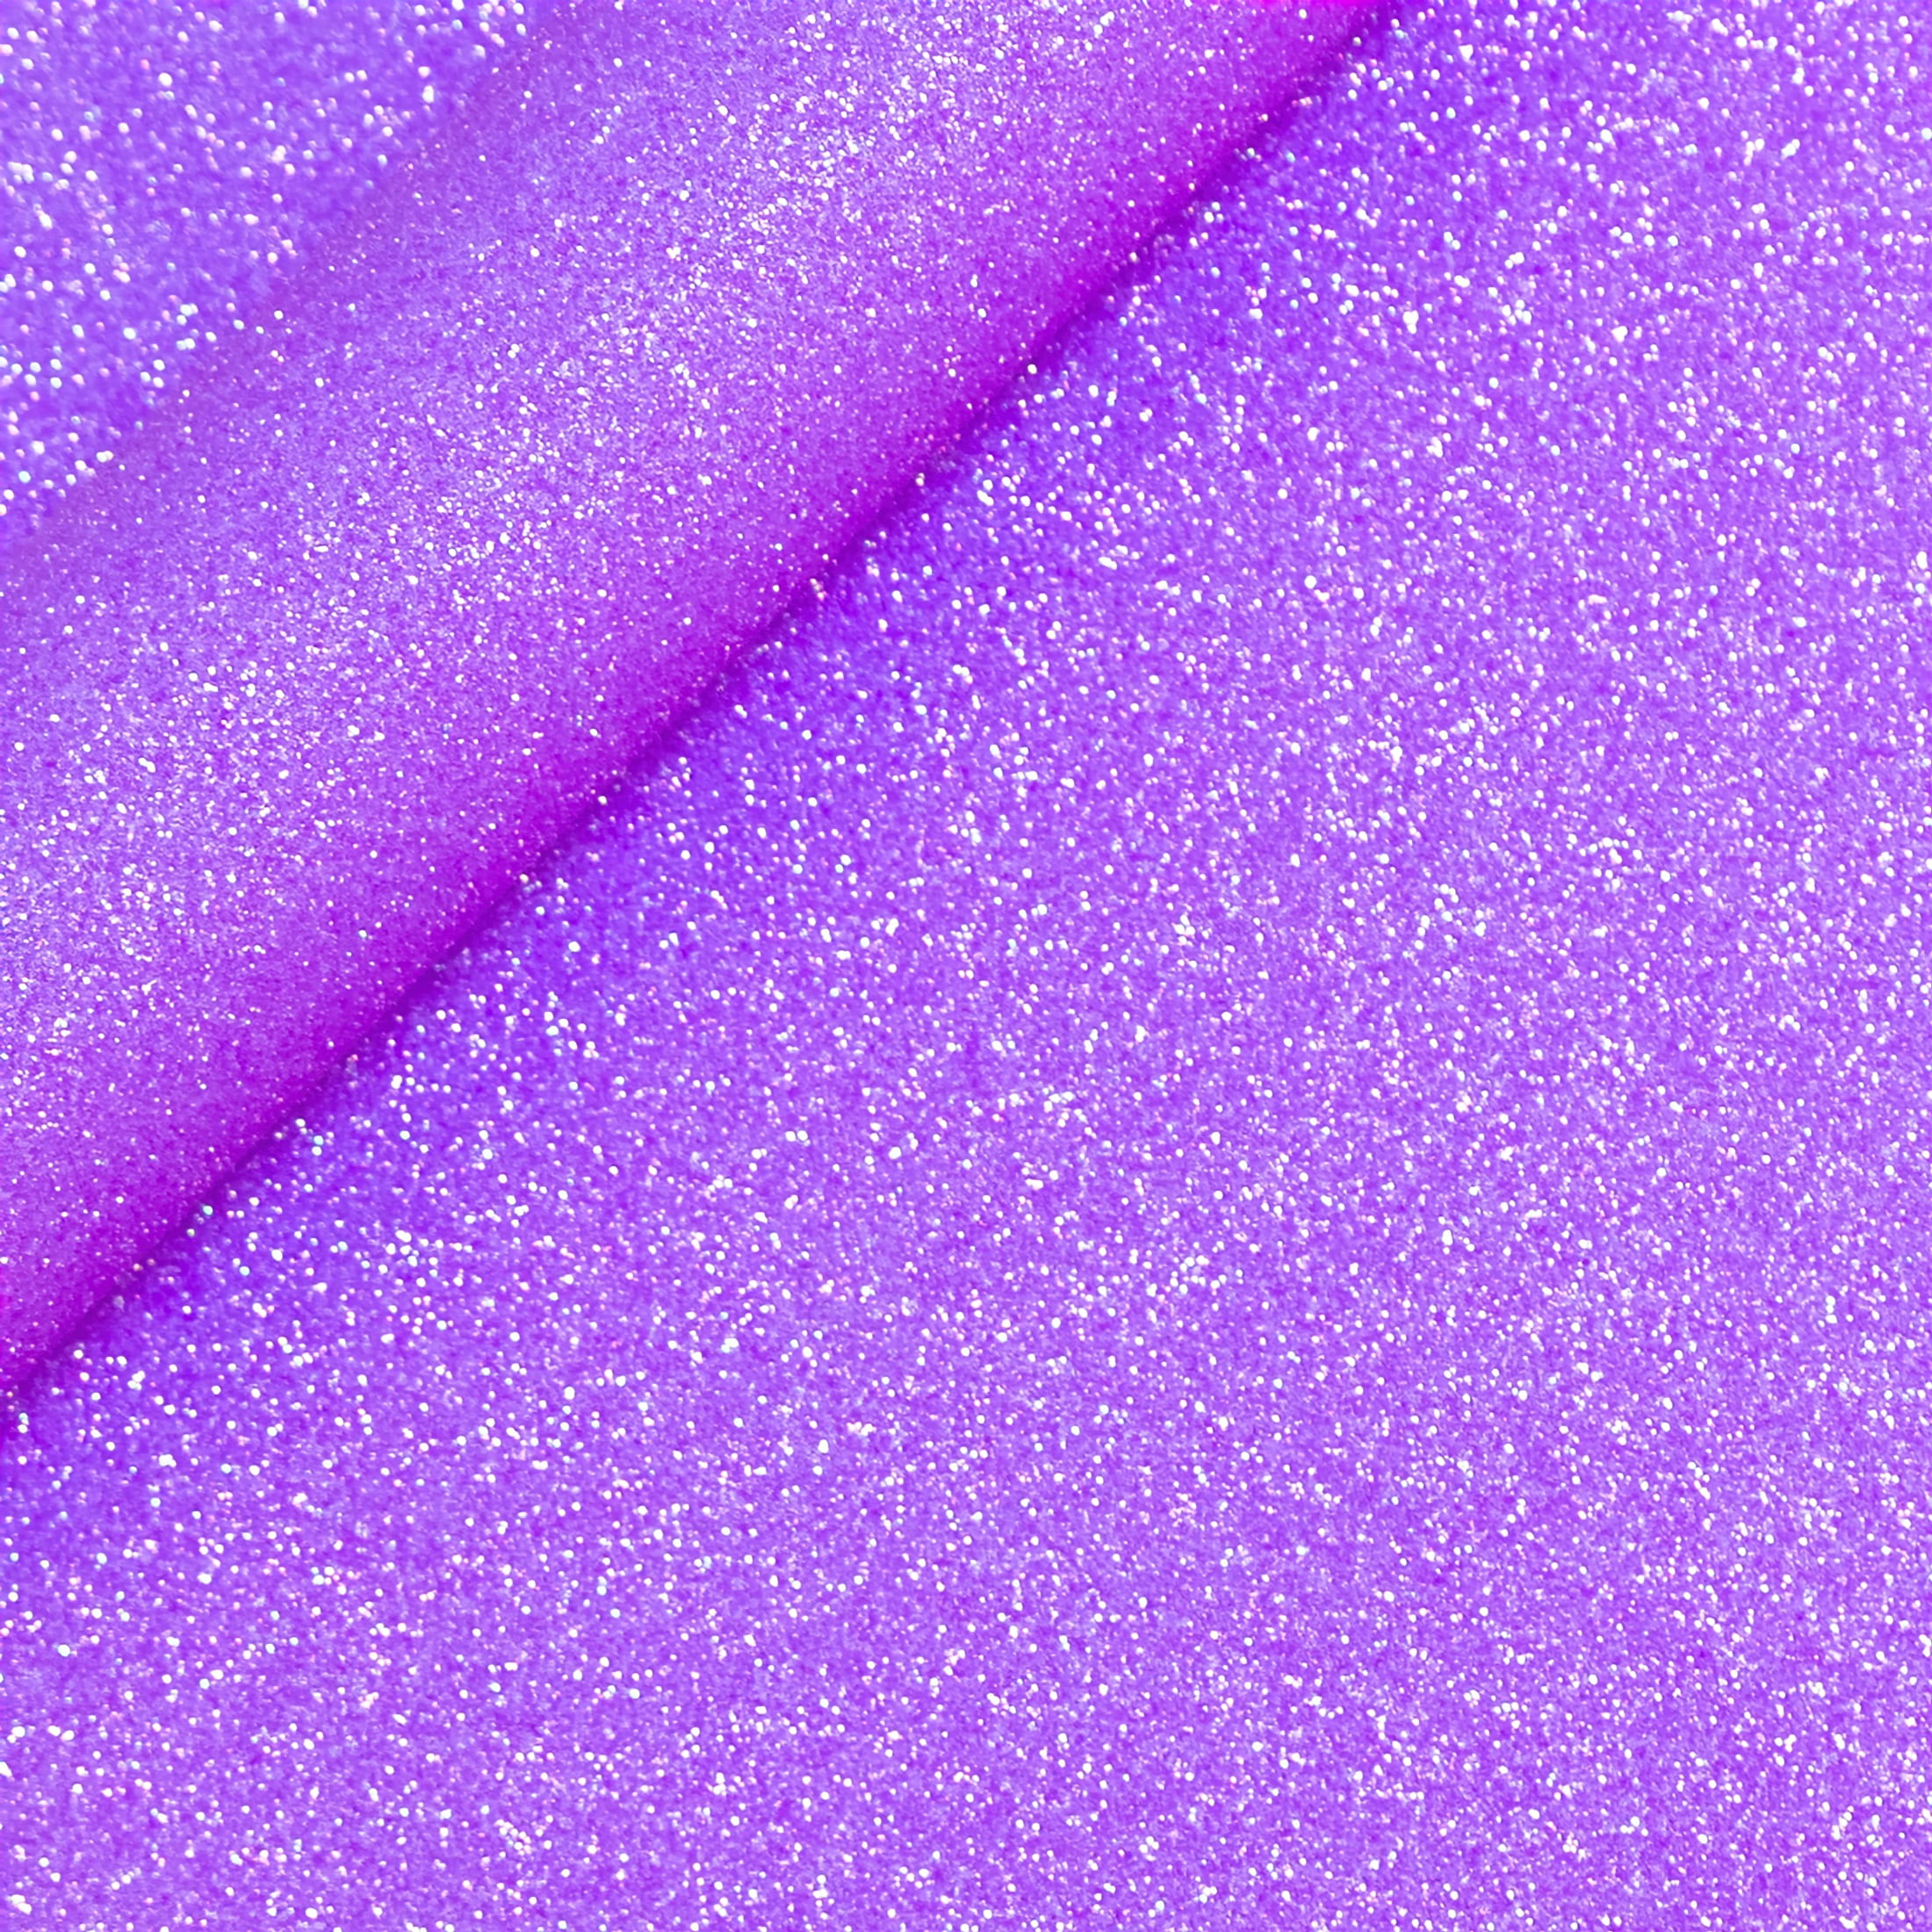 Siser Glitter HTV - Neon Purple